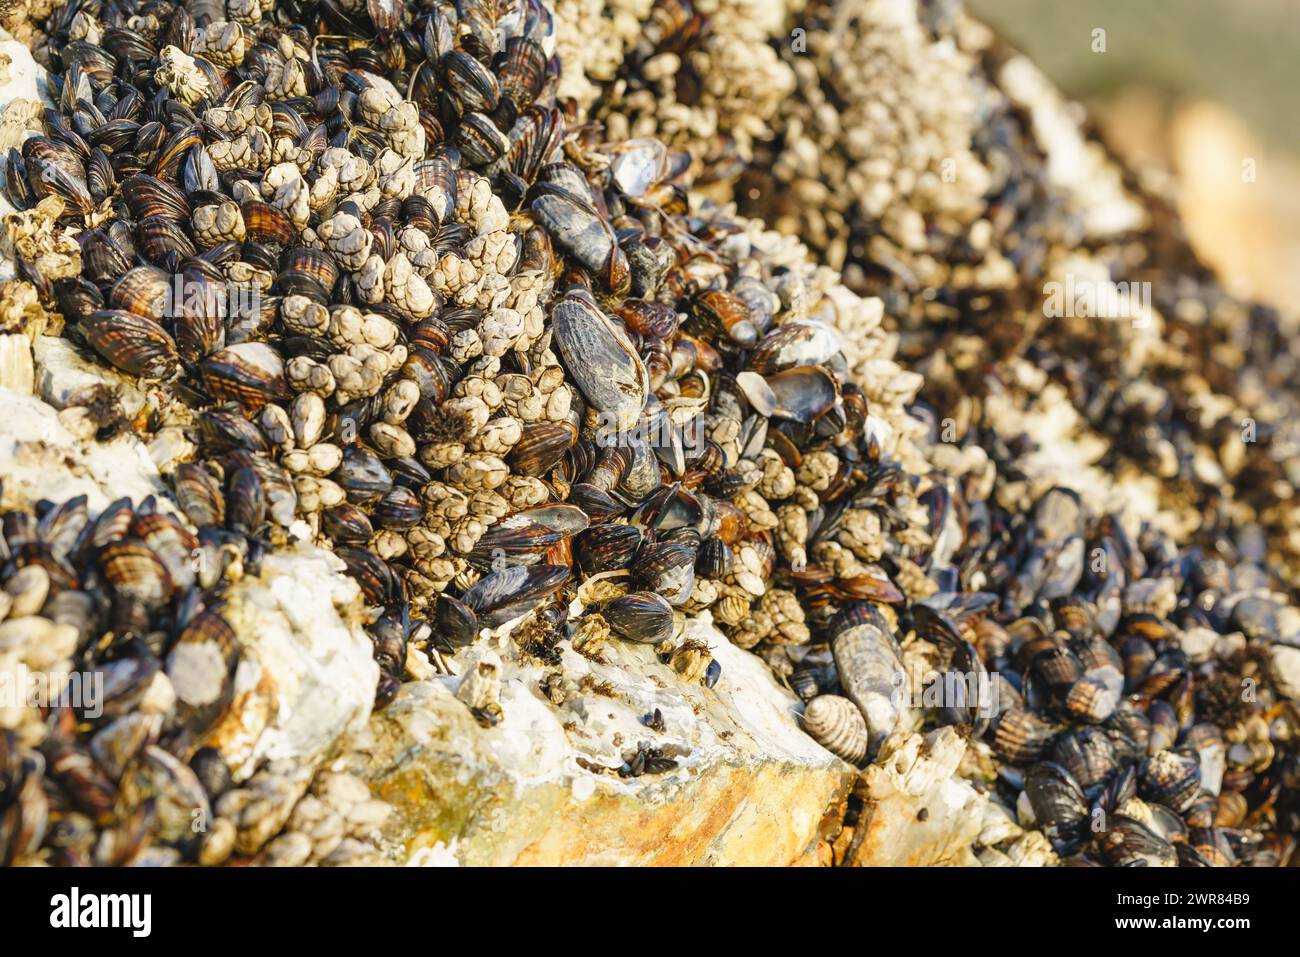 Gänse, Stalking oder Schwanenhals sind am Avila Beach, Kalifornien, an Felsen angebrachte Krebstiere, die sich von den Fischen ernähren Stockfoto